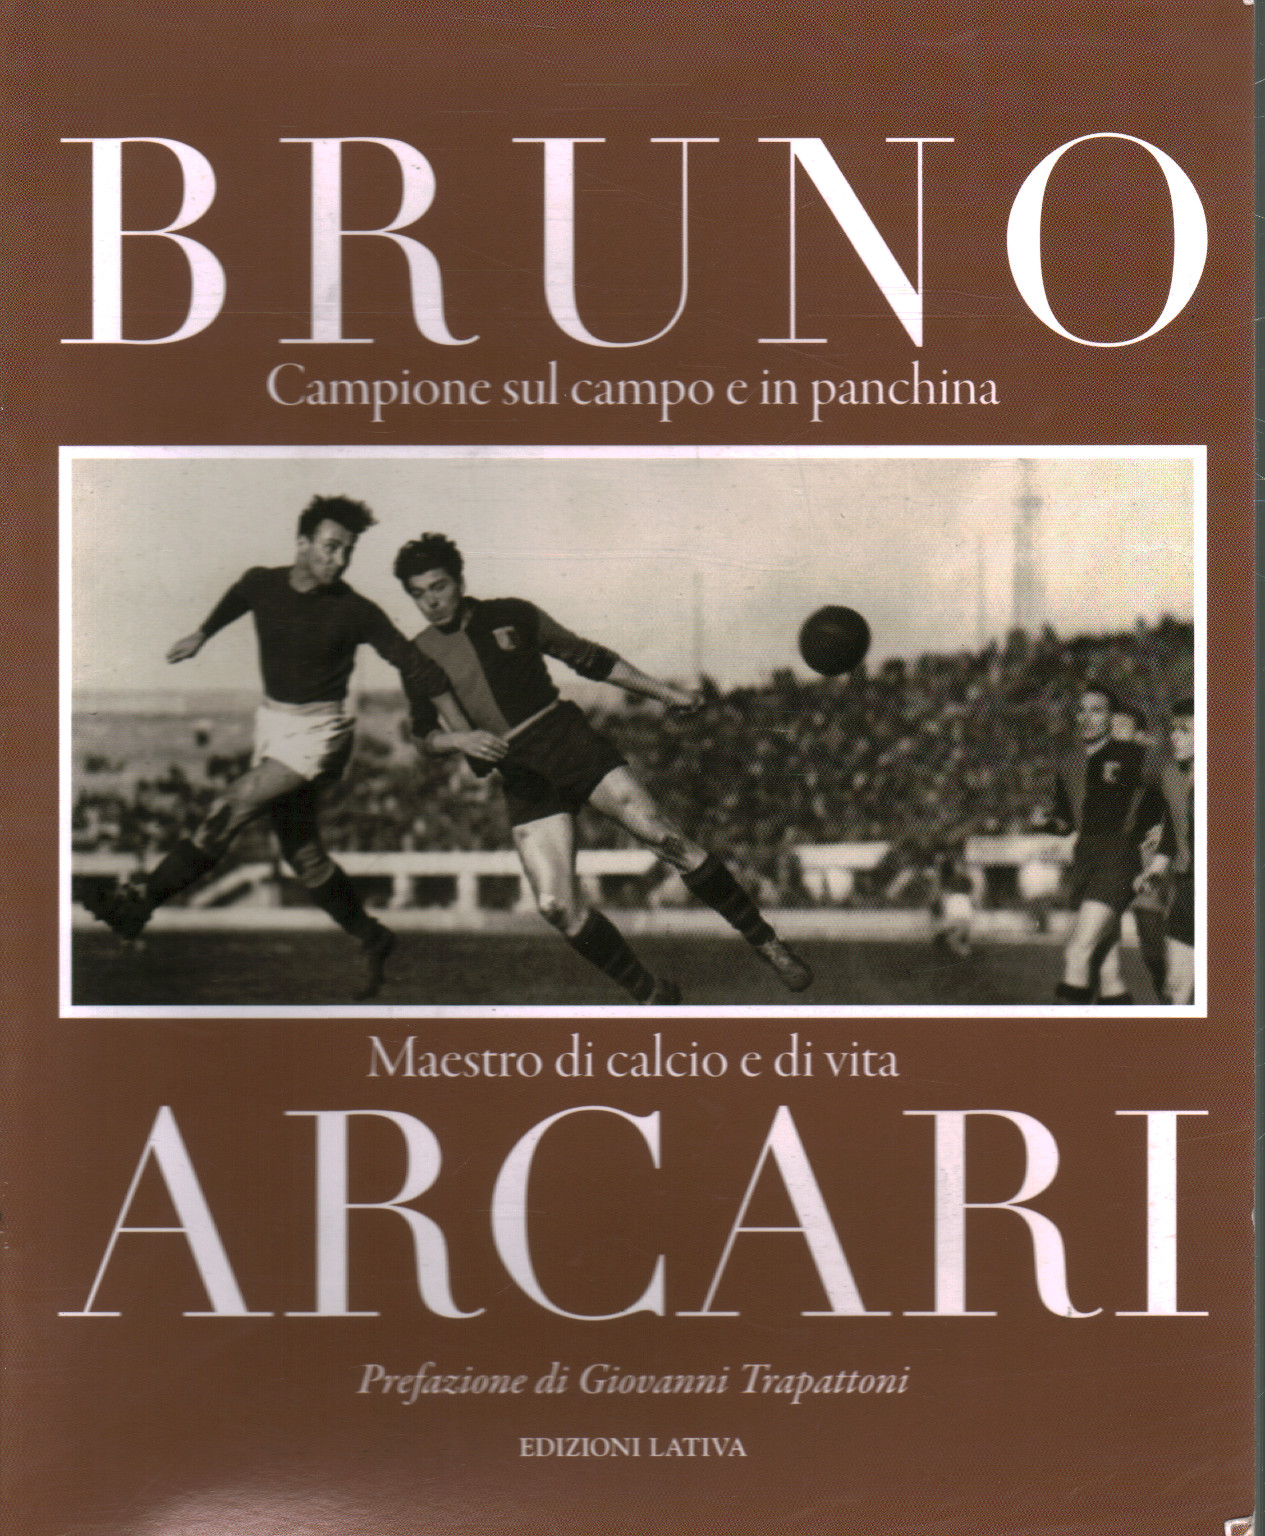 Bruno Arcari, s.a.